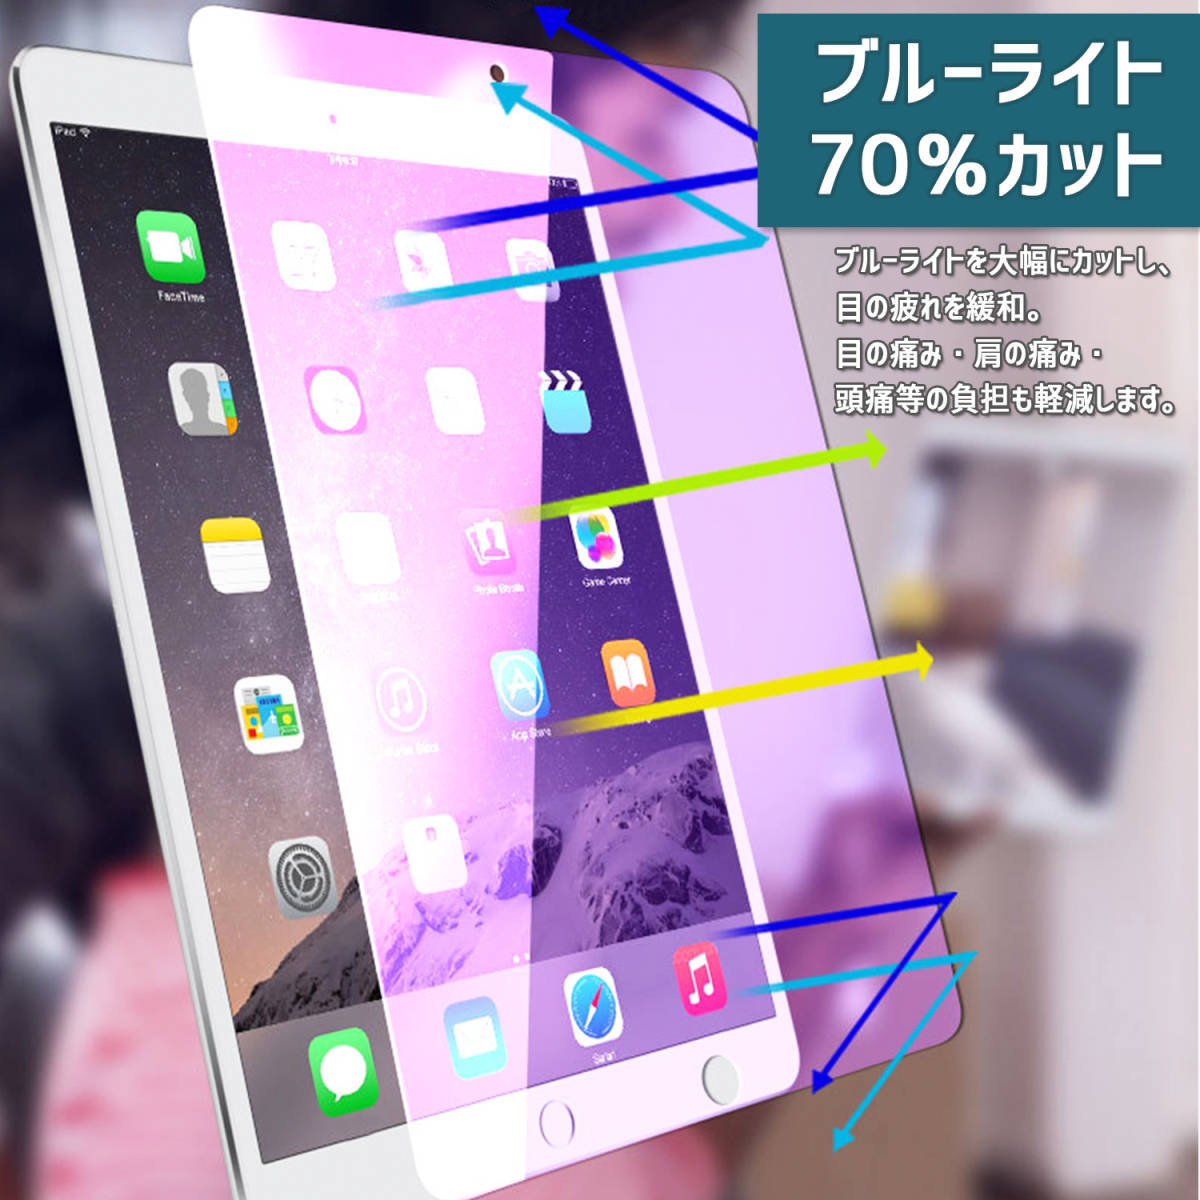 iPad 9.7インチ 第5世代 第6世代 ガラスフィルム ブルーライトカット_画像2